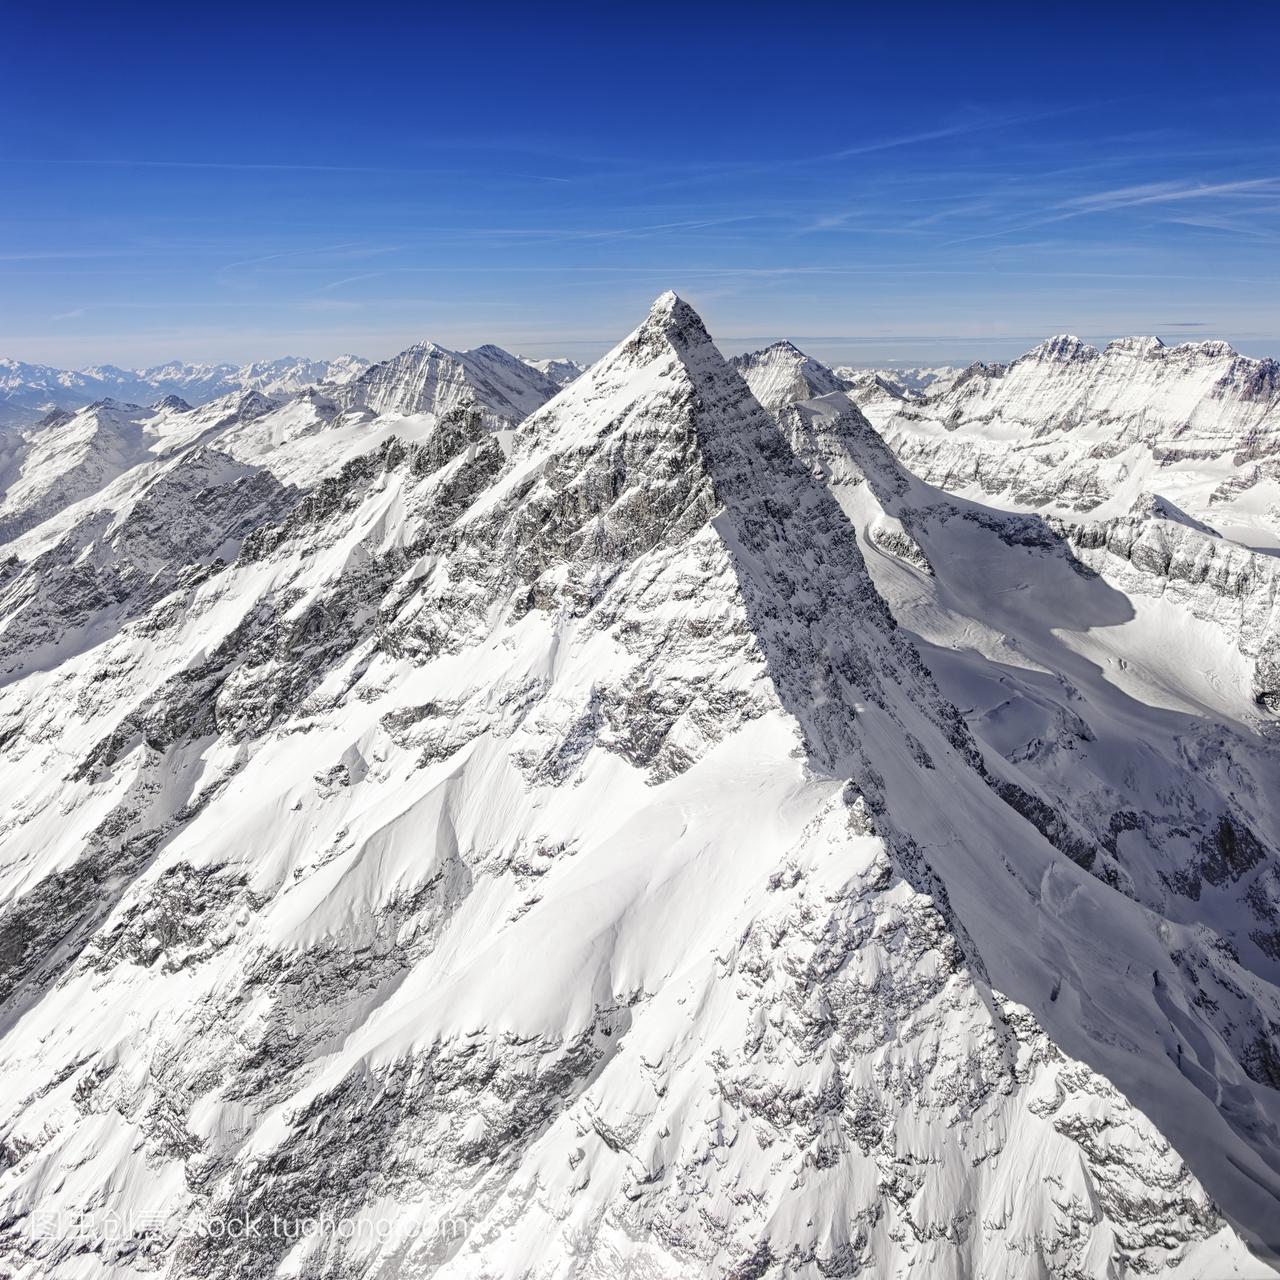 瑞士的阿尔卑斯山少女峰顶峰